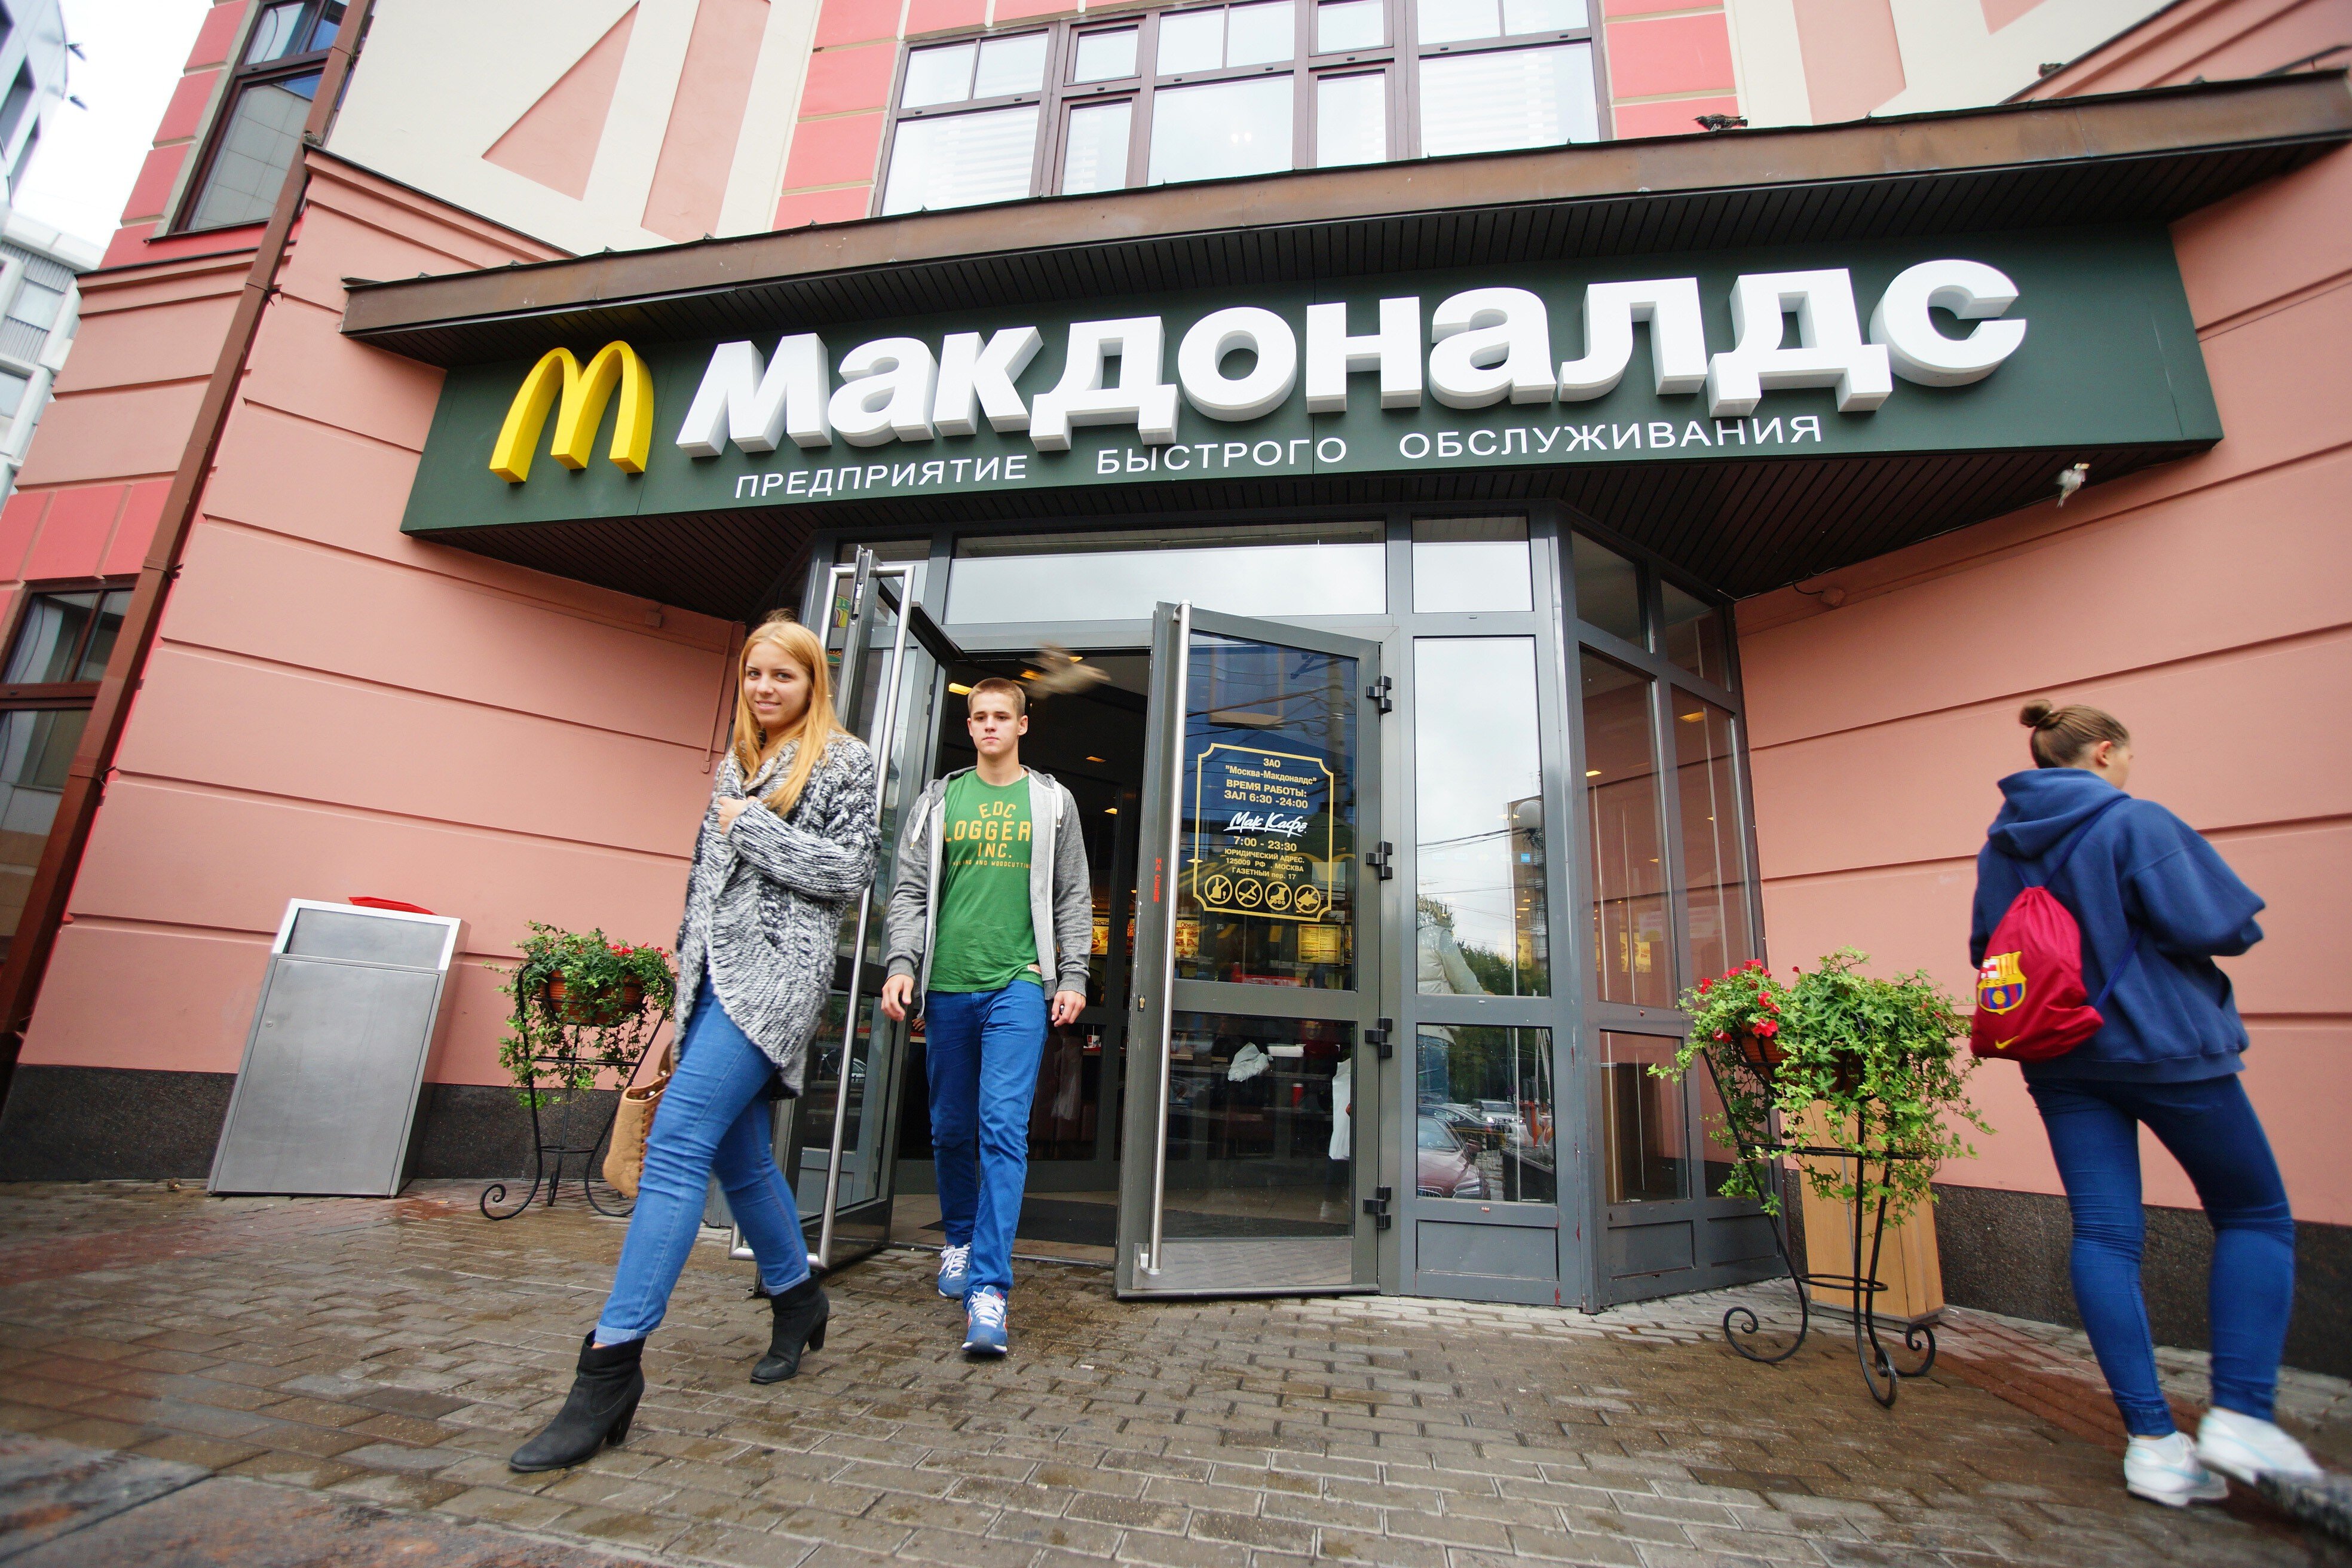 Mash показал возможный логотип обновлённой сети McDonald’s в России